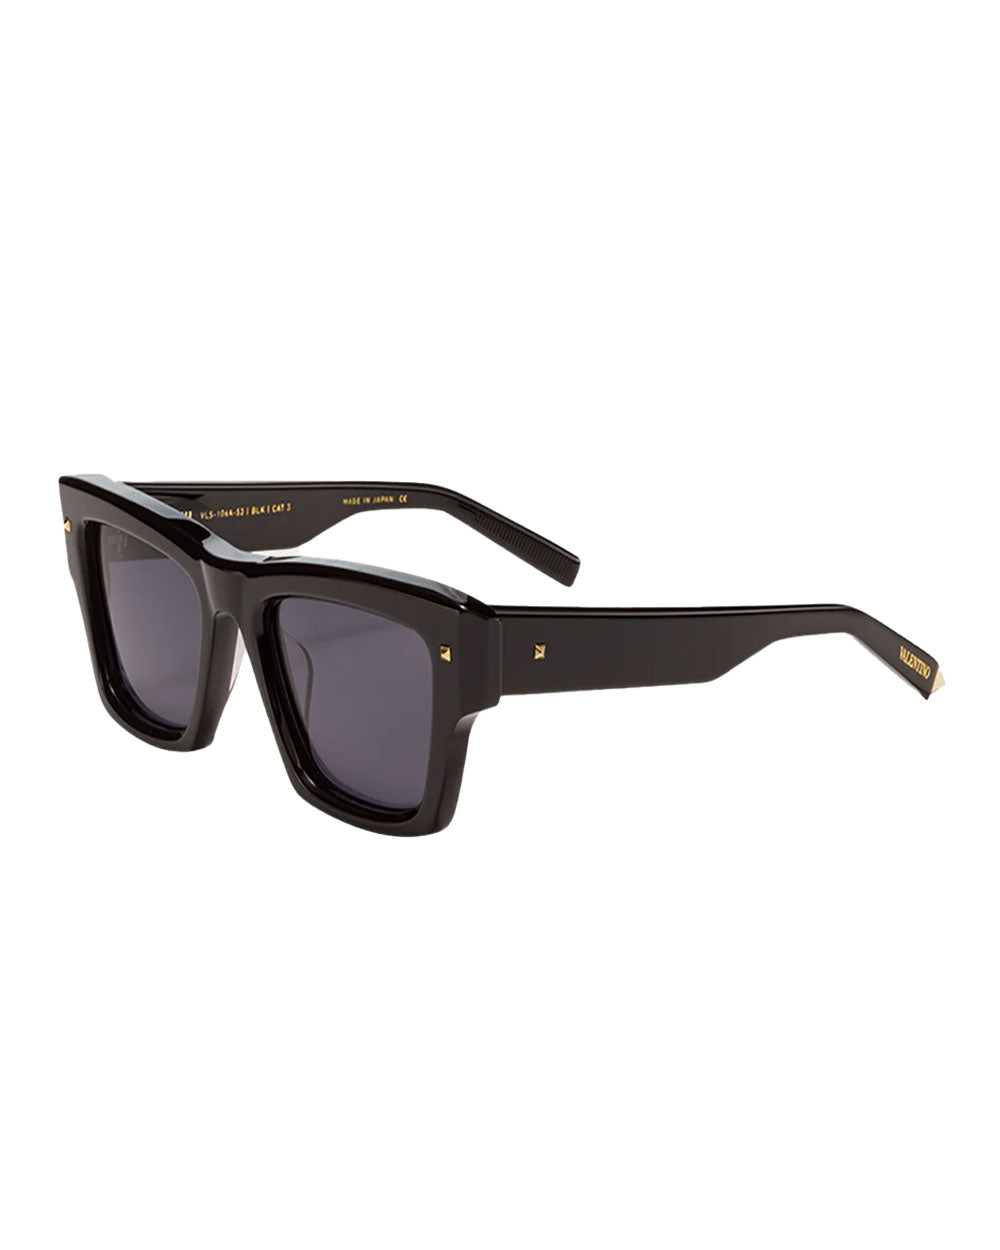 XXII Square Sunglasses in Black